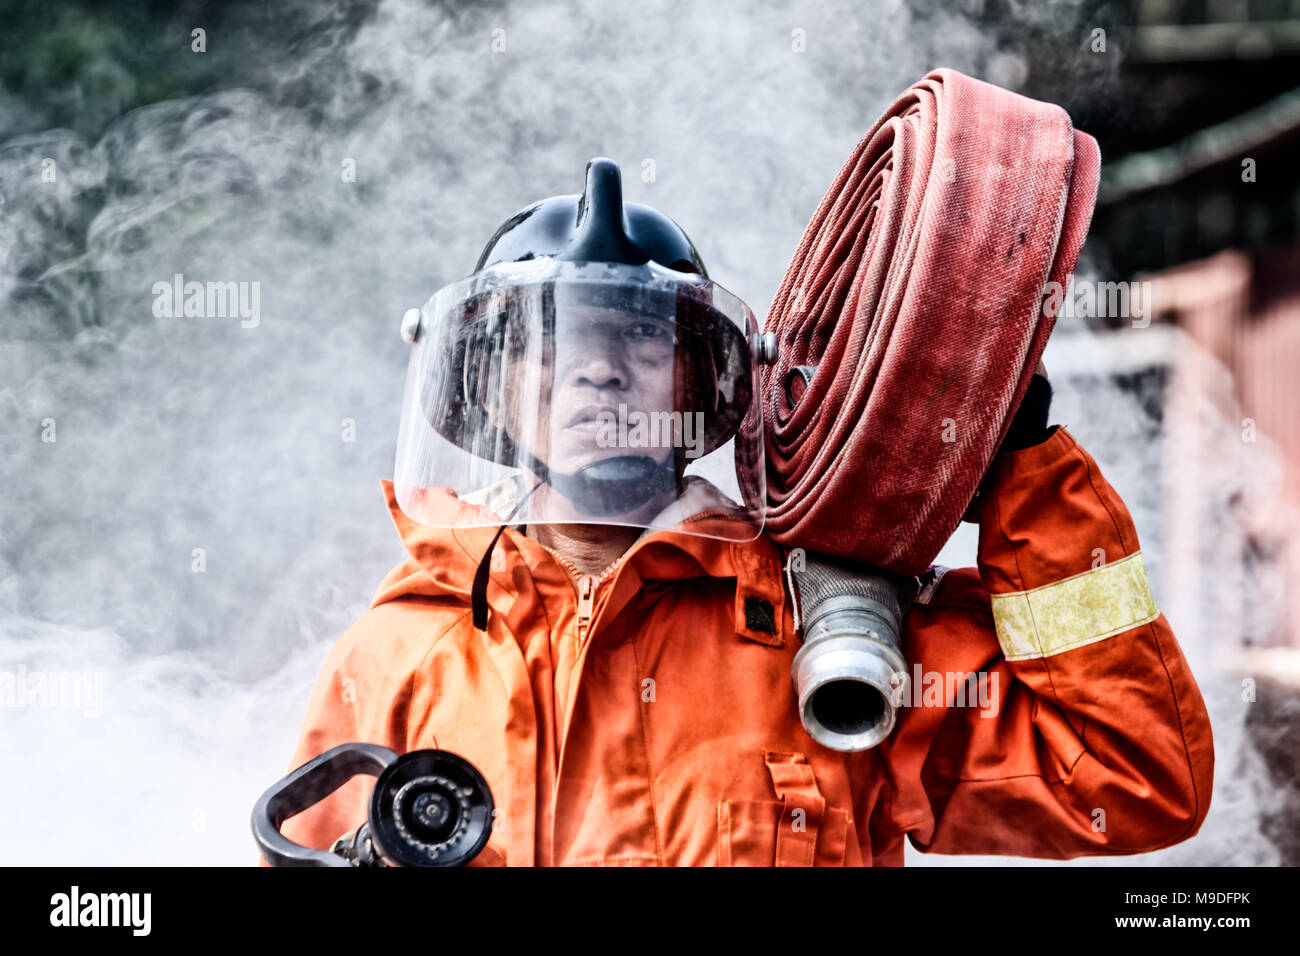 D'Incendie et de sauvetage d'urgence de la formation, les pompiers en uniforme, effectuer un jet d'eau à travers d'une flamme Banque D'Images